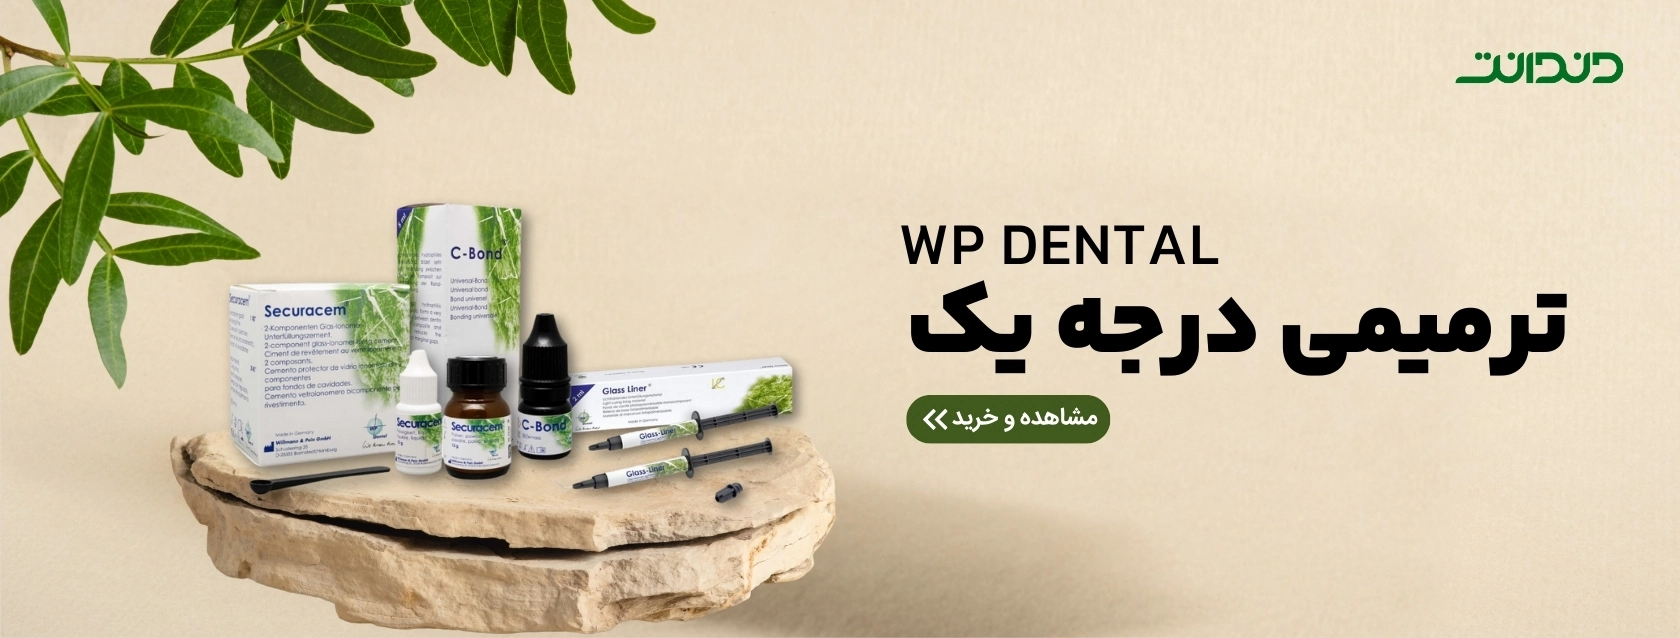 WP-Dental